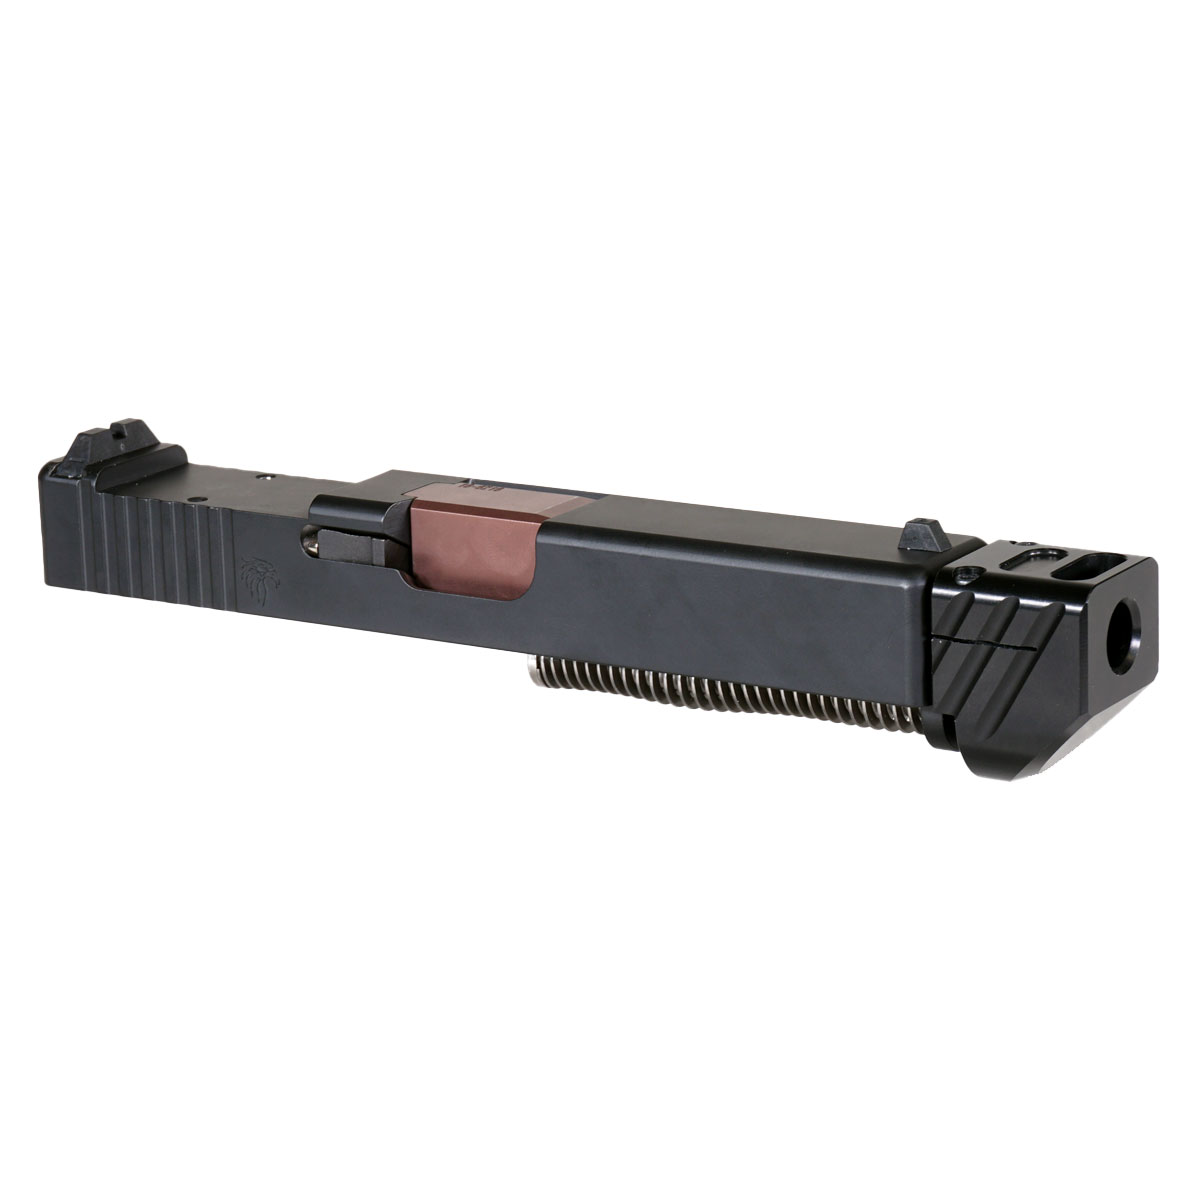 DDS 'Blockbuster V4 w/ Black Compensator' 9mm Complete Slide Kit - Glock 19 Gen 1-3 Compatible